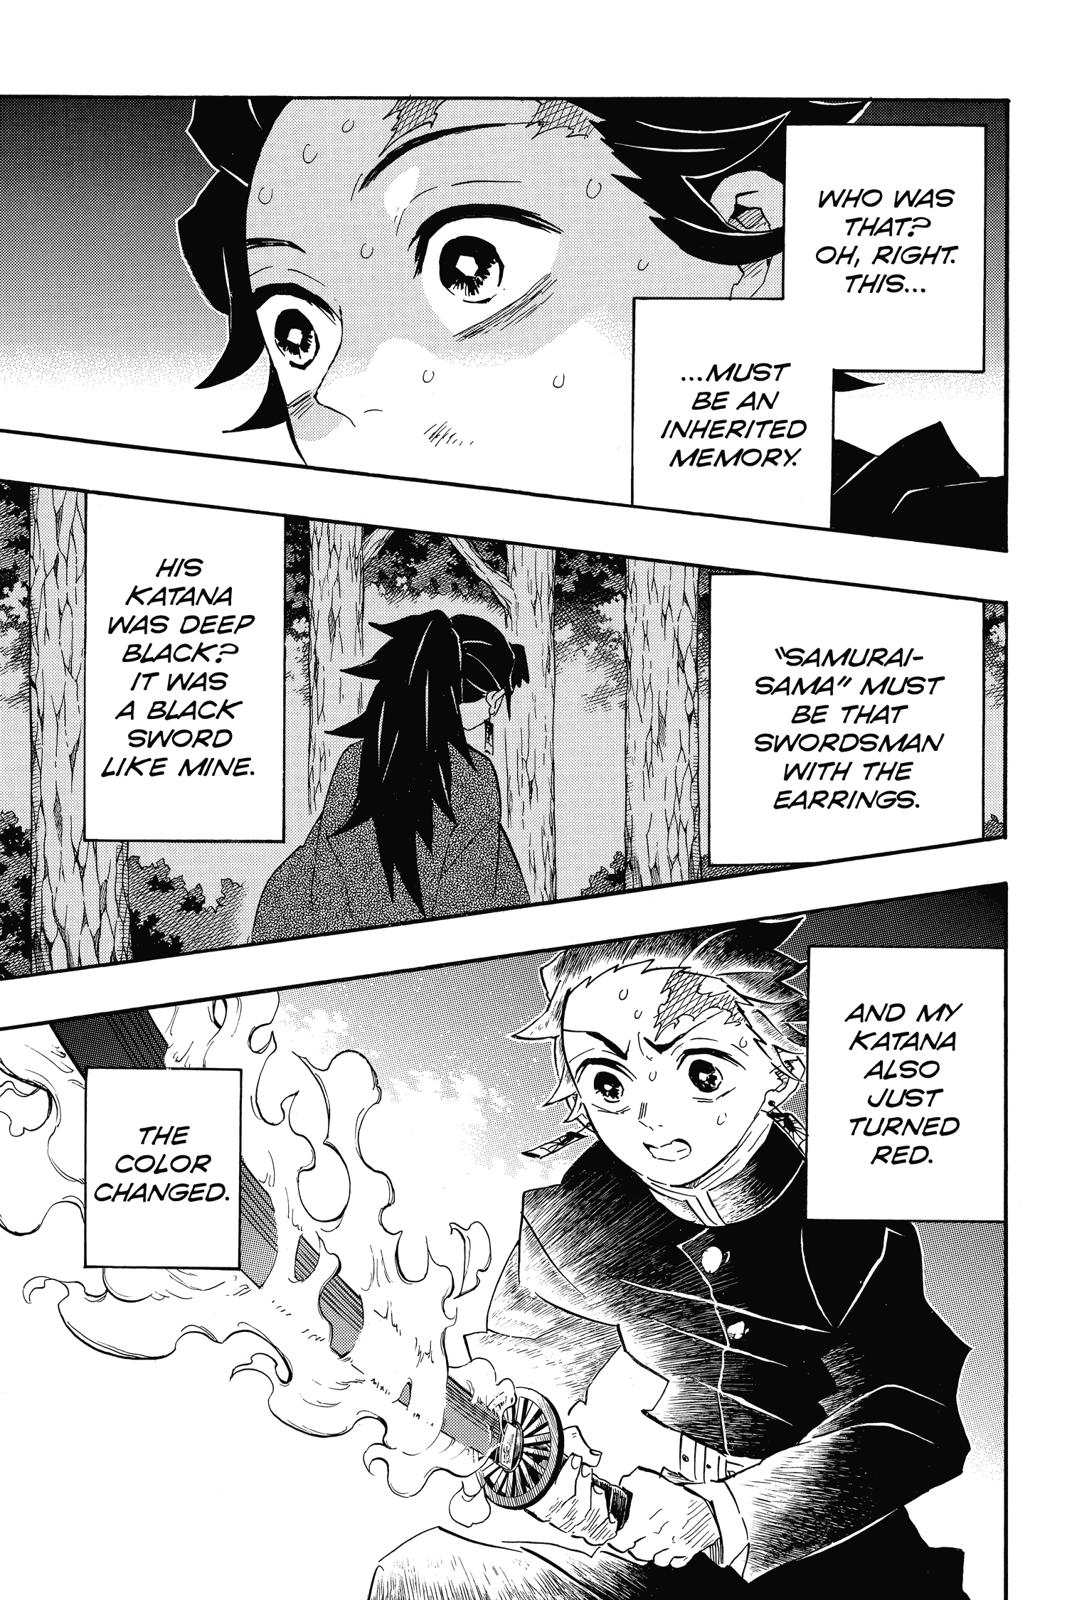 Demon Slayer Manga Manga Chapter - 113 - image 3